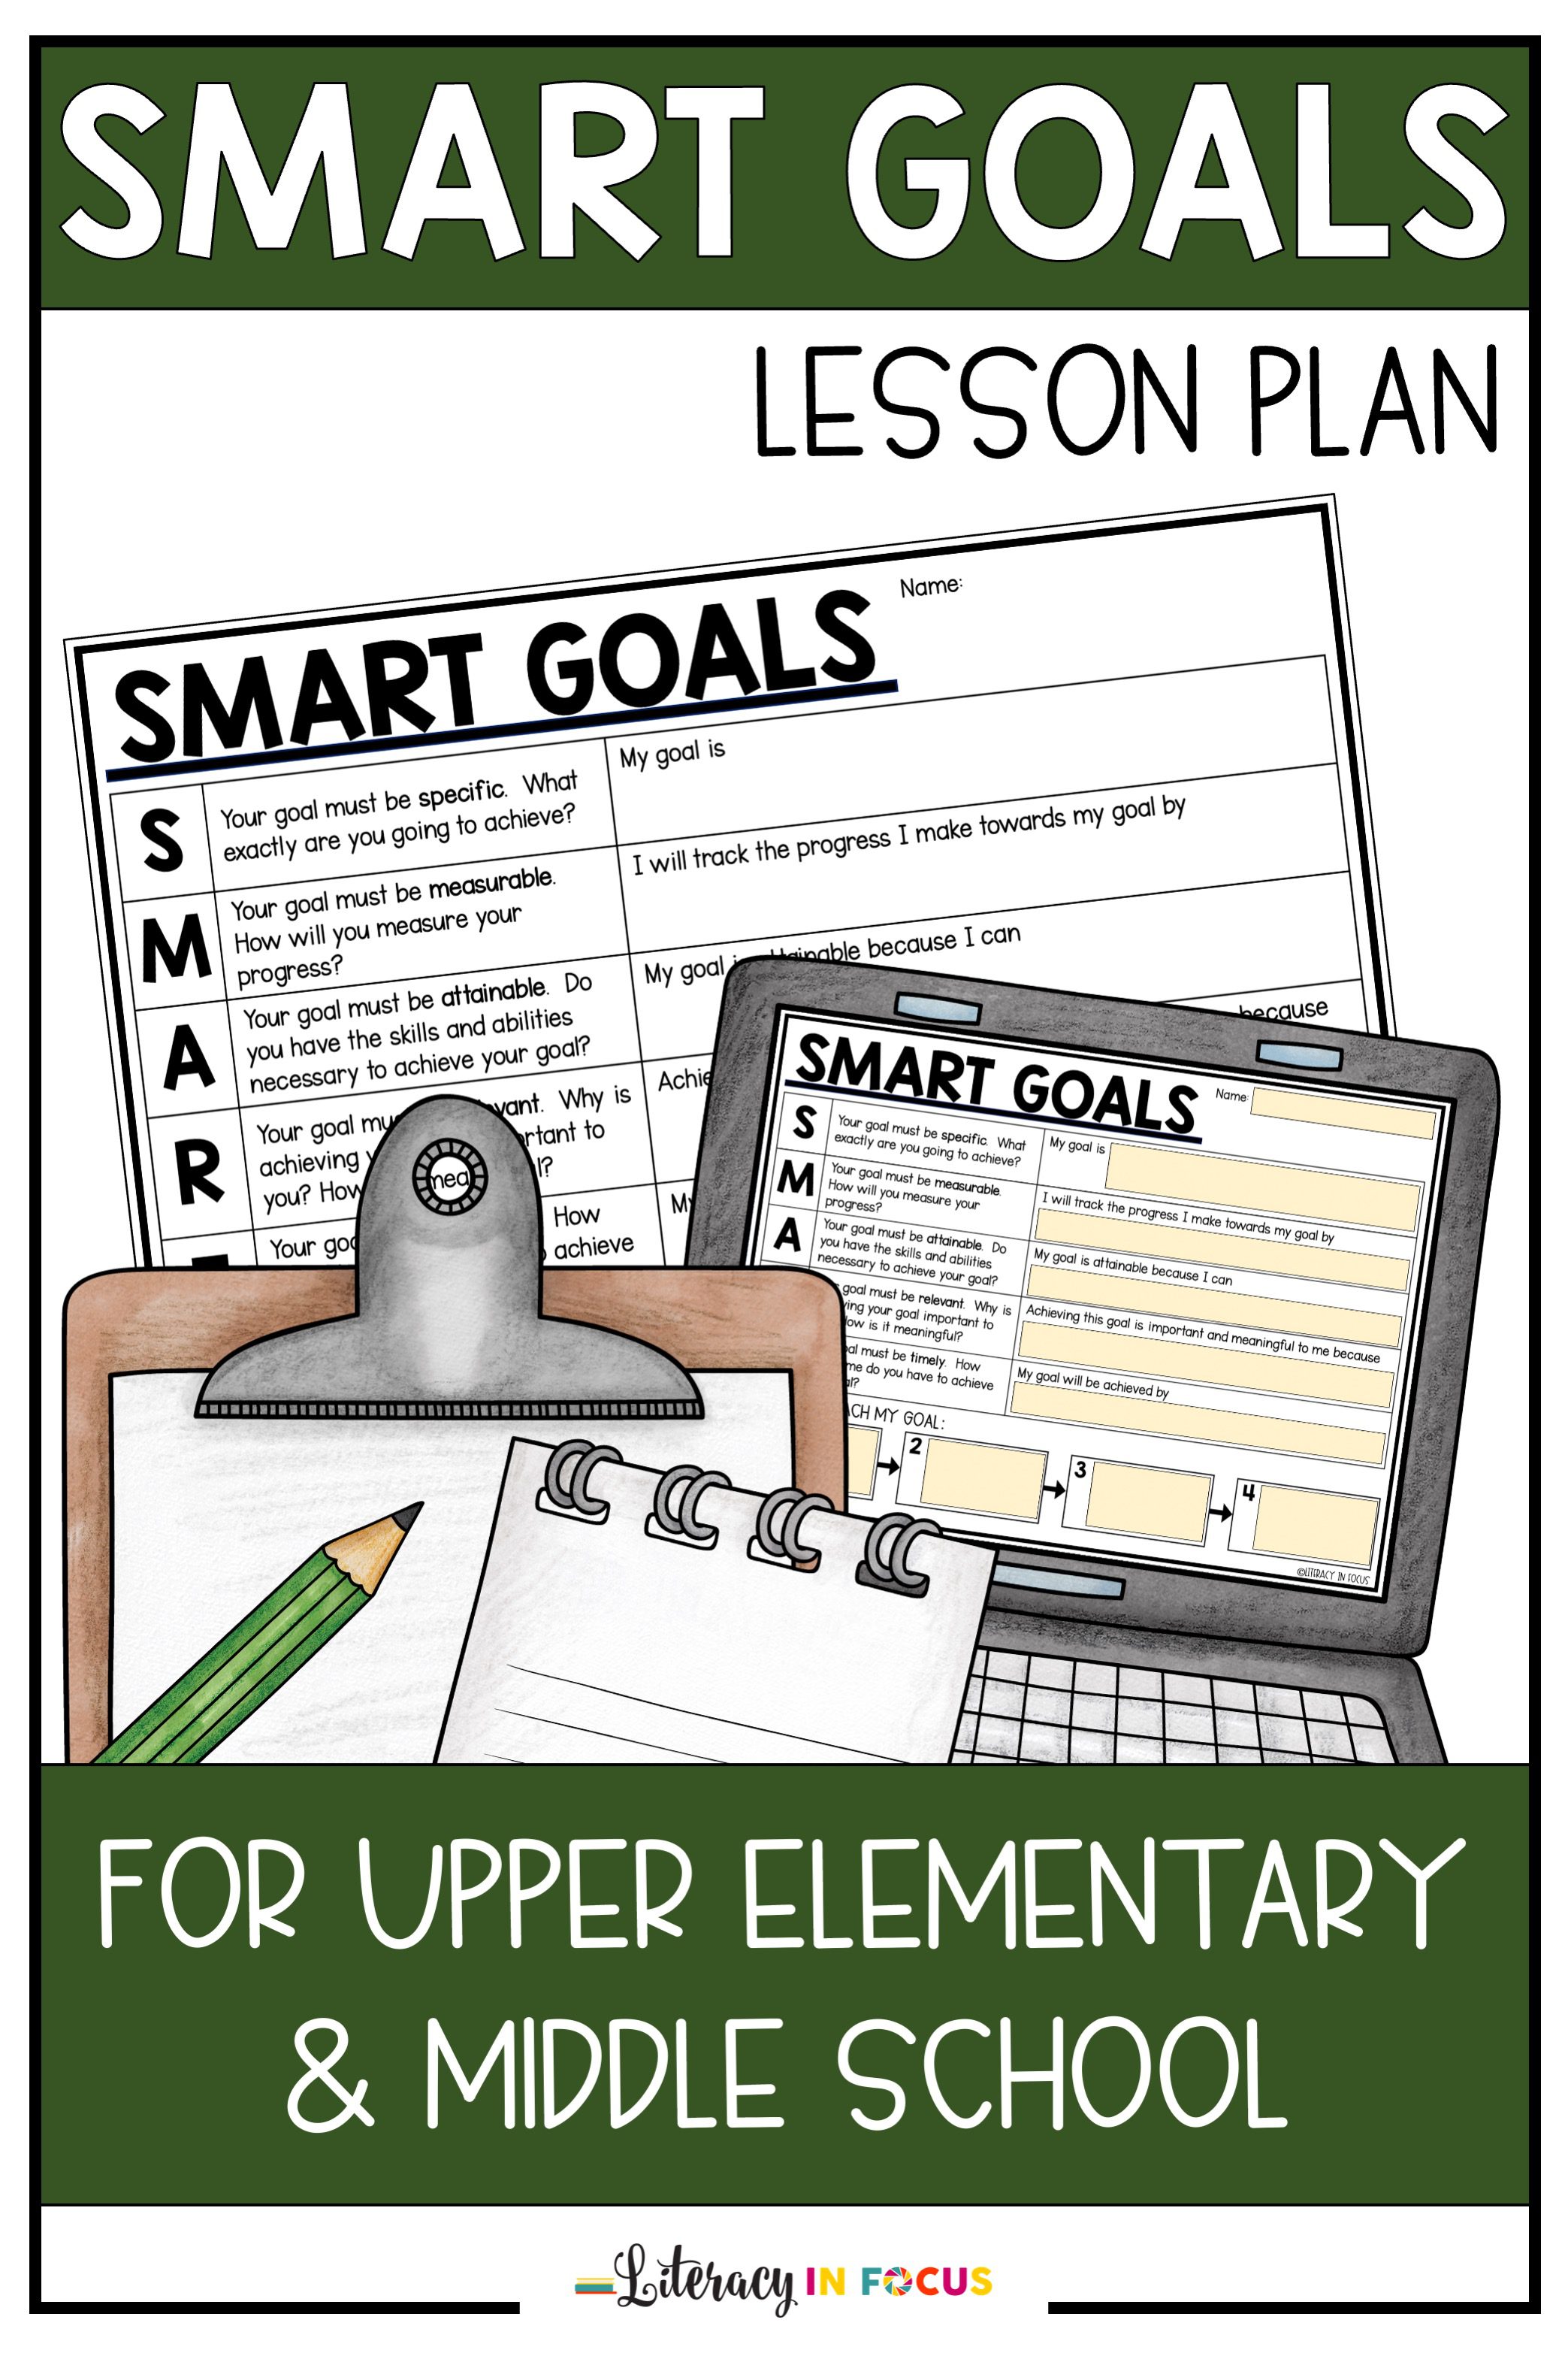 SMART Goals Lesson Plan